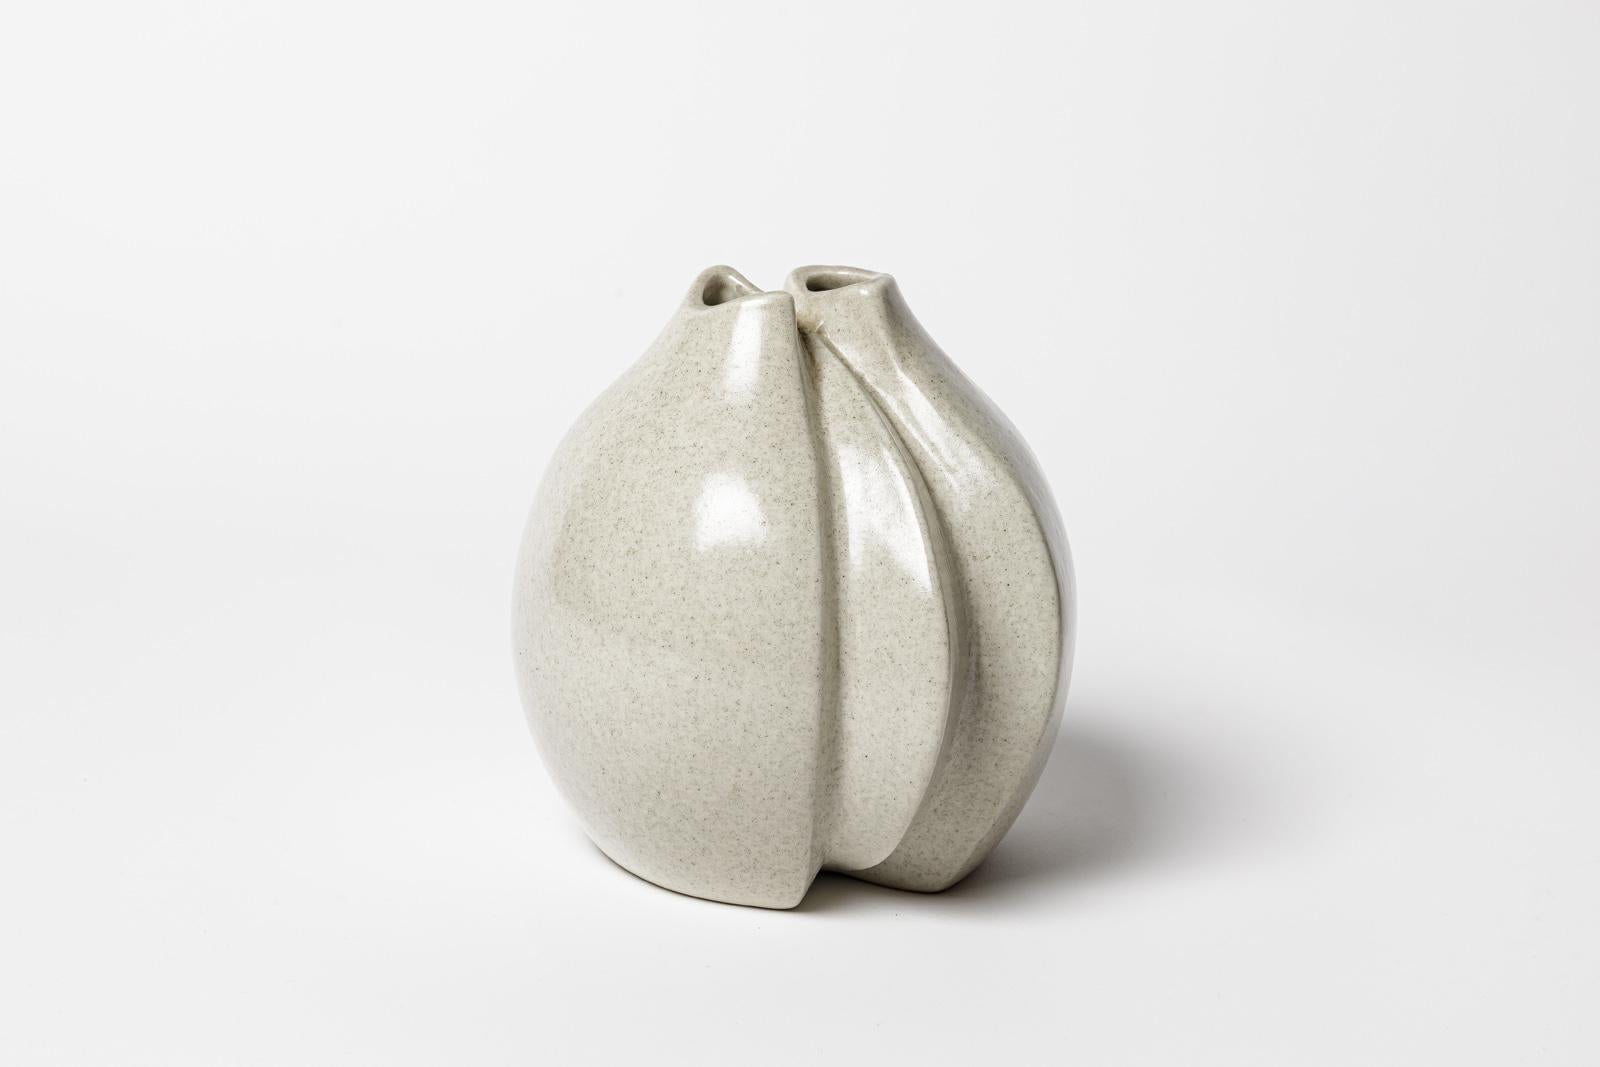 Jacqueline und Tim Orr

20. Jahrhundert Design weiße Keramik Porzellan Vase

Signiert unter dem Sockel

CIRCA 1970

Original perfekter Zustand

Höhe 15 cm
Groß 13 cm